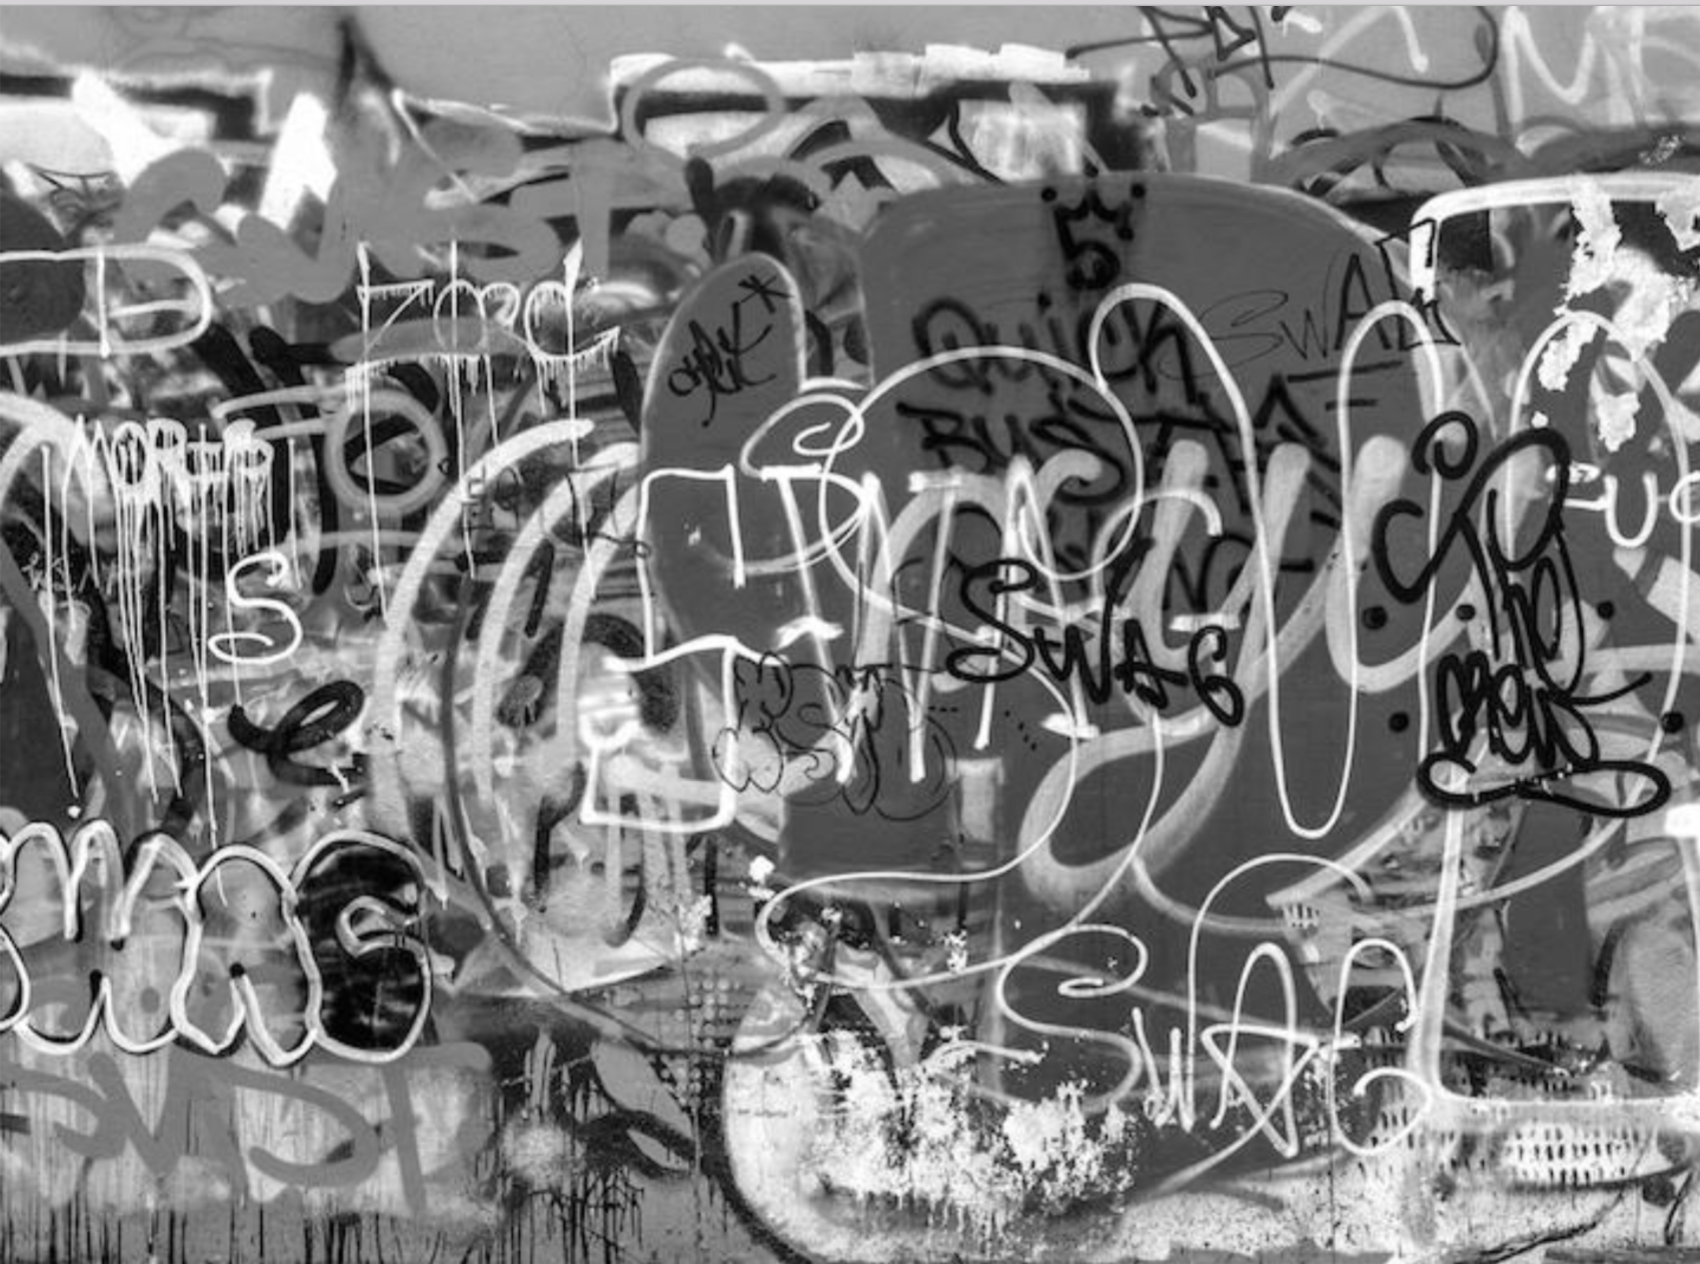 Black & white image of wall graffiti